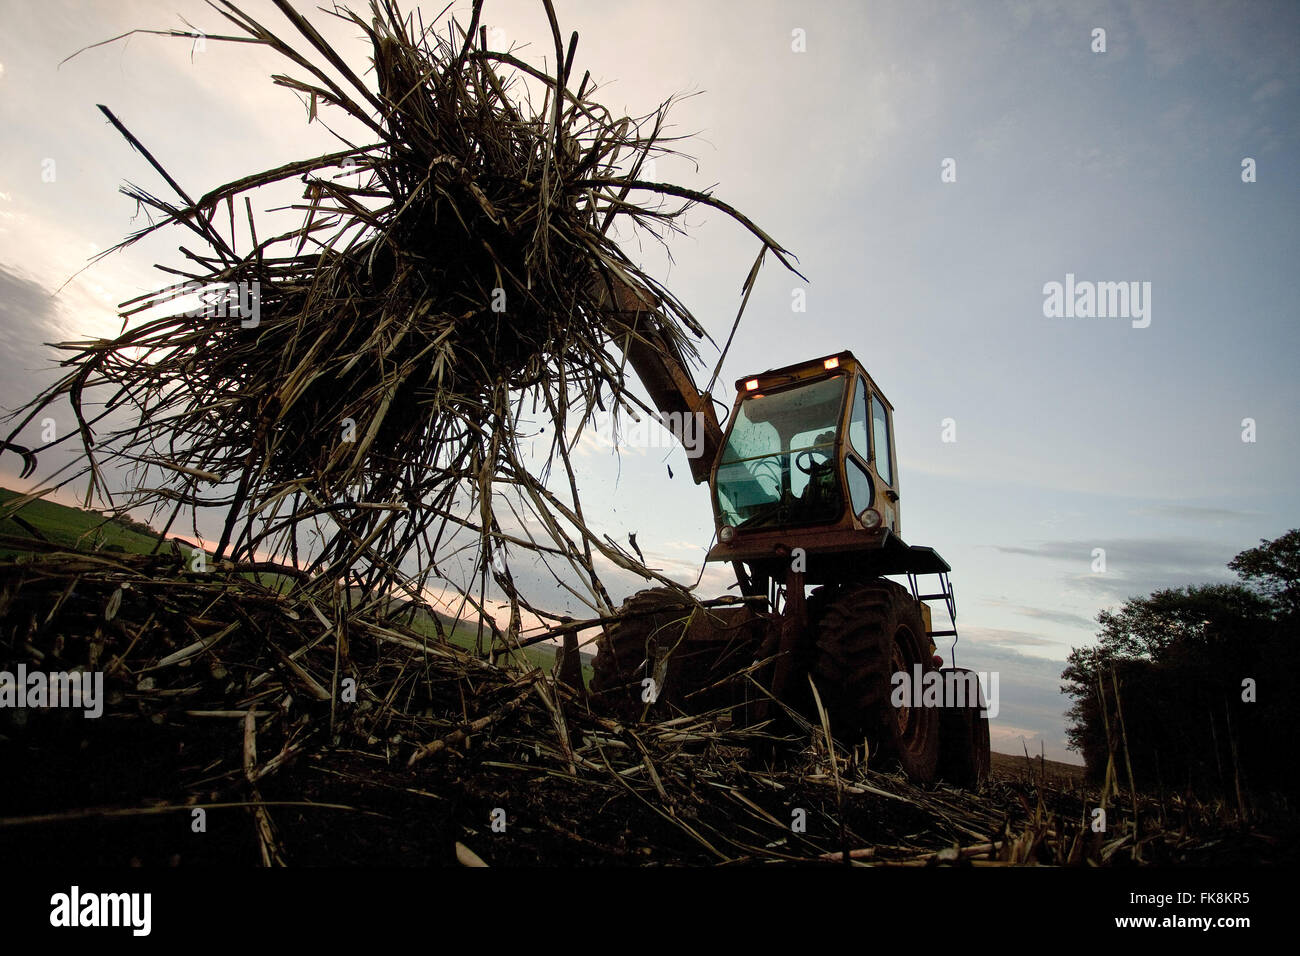 La collecte du tracteur après la récolte mécanique de la canne à sucre à la campagne en fin d'après-midi Banque D'Images